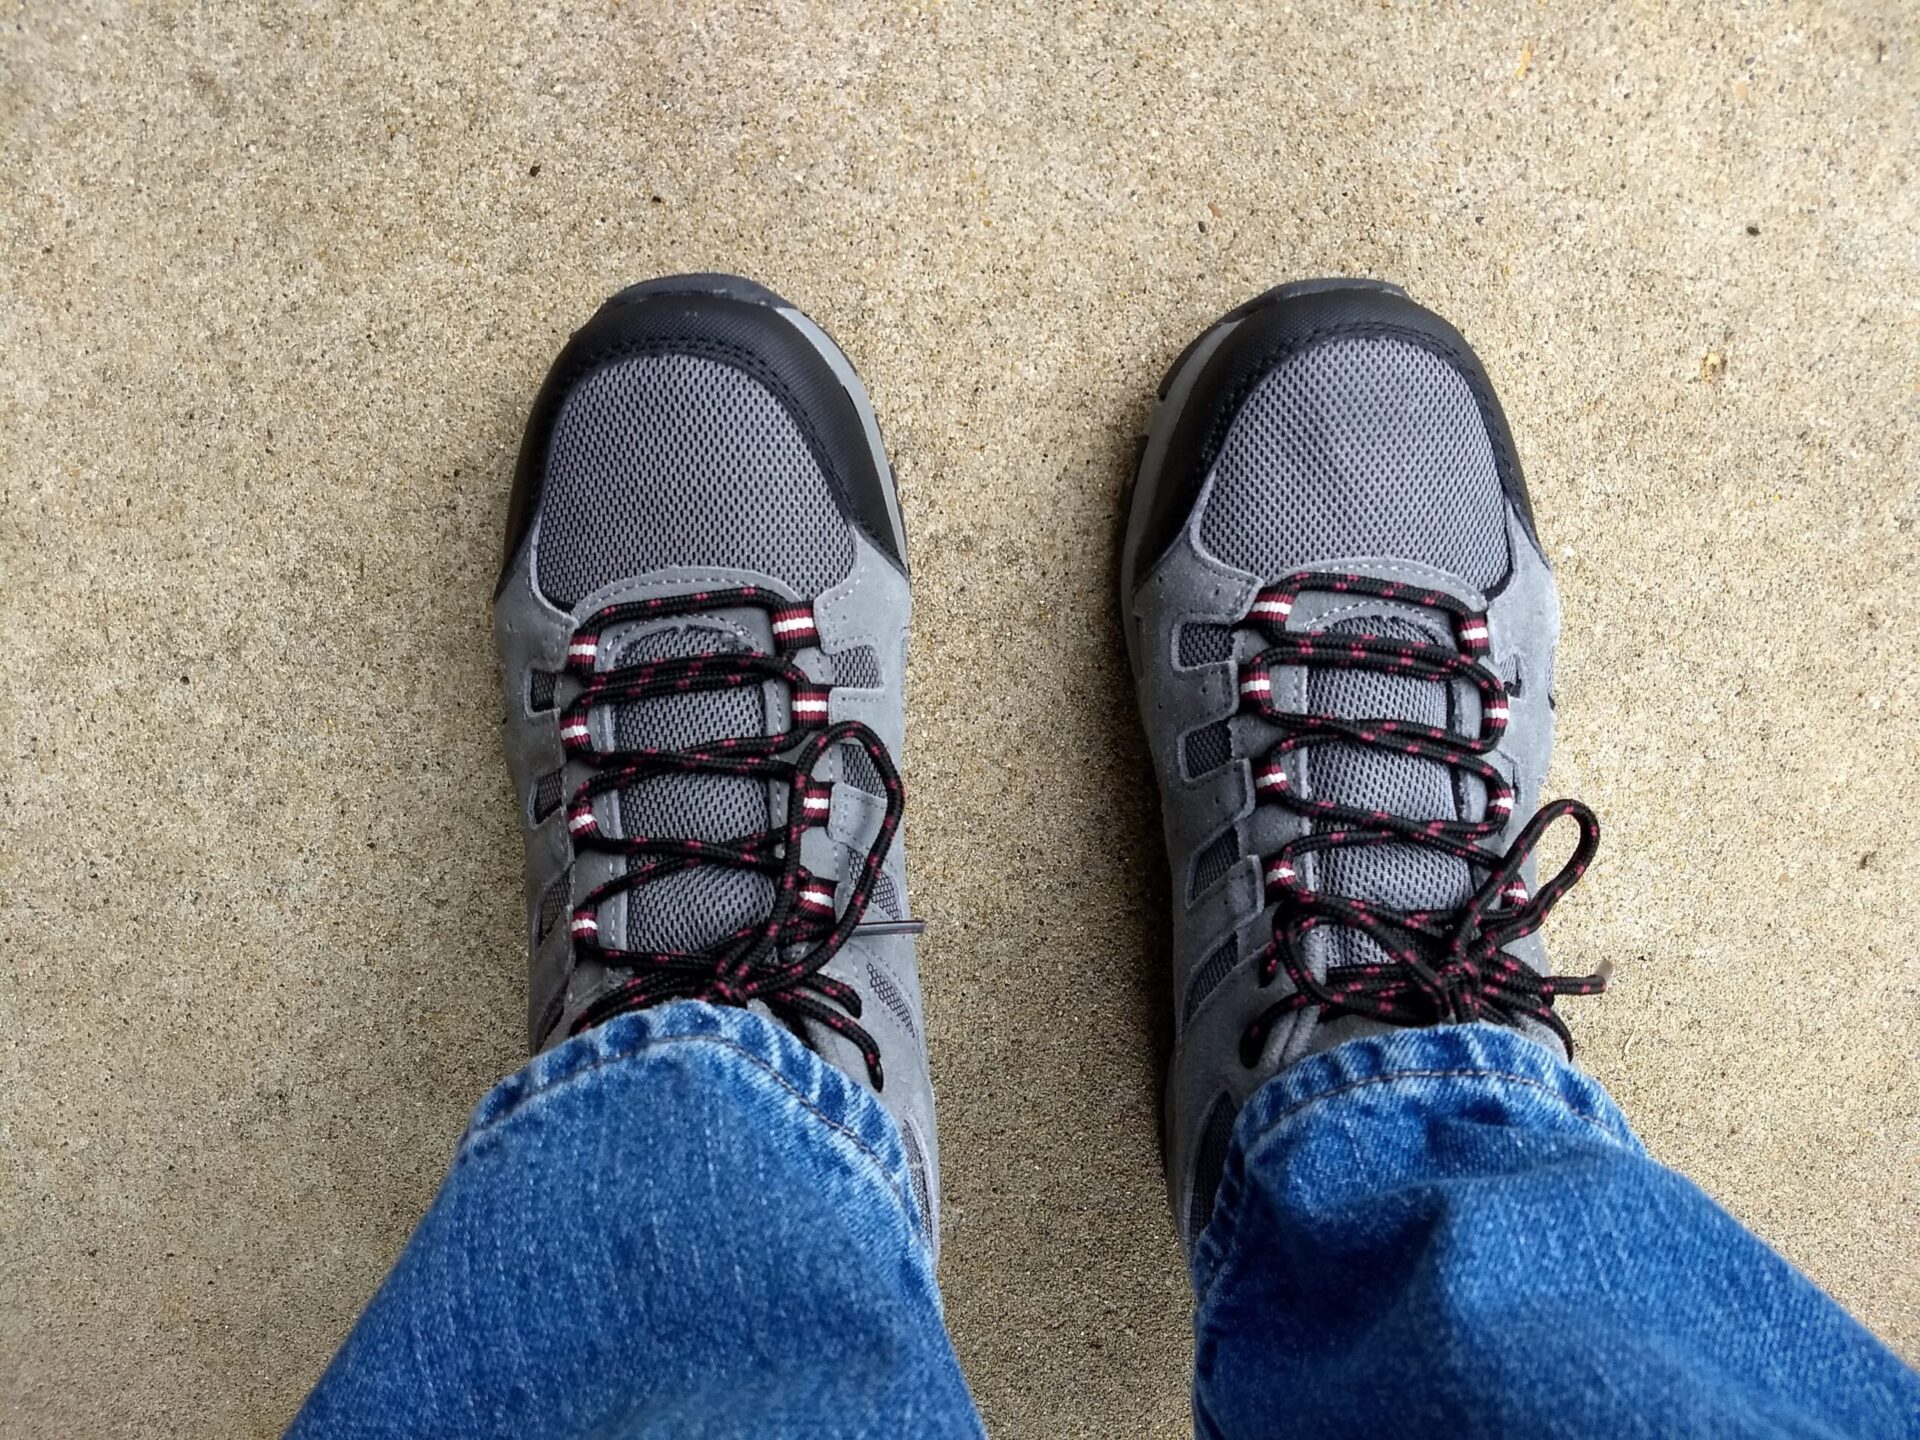 Adventuridge Men's Hiker Boots | ALDI REVIEWER